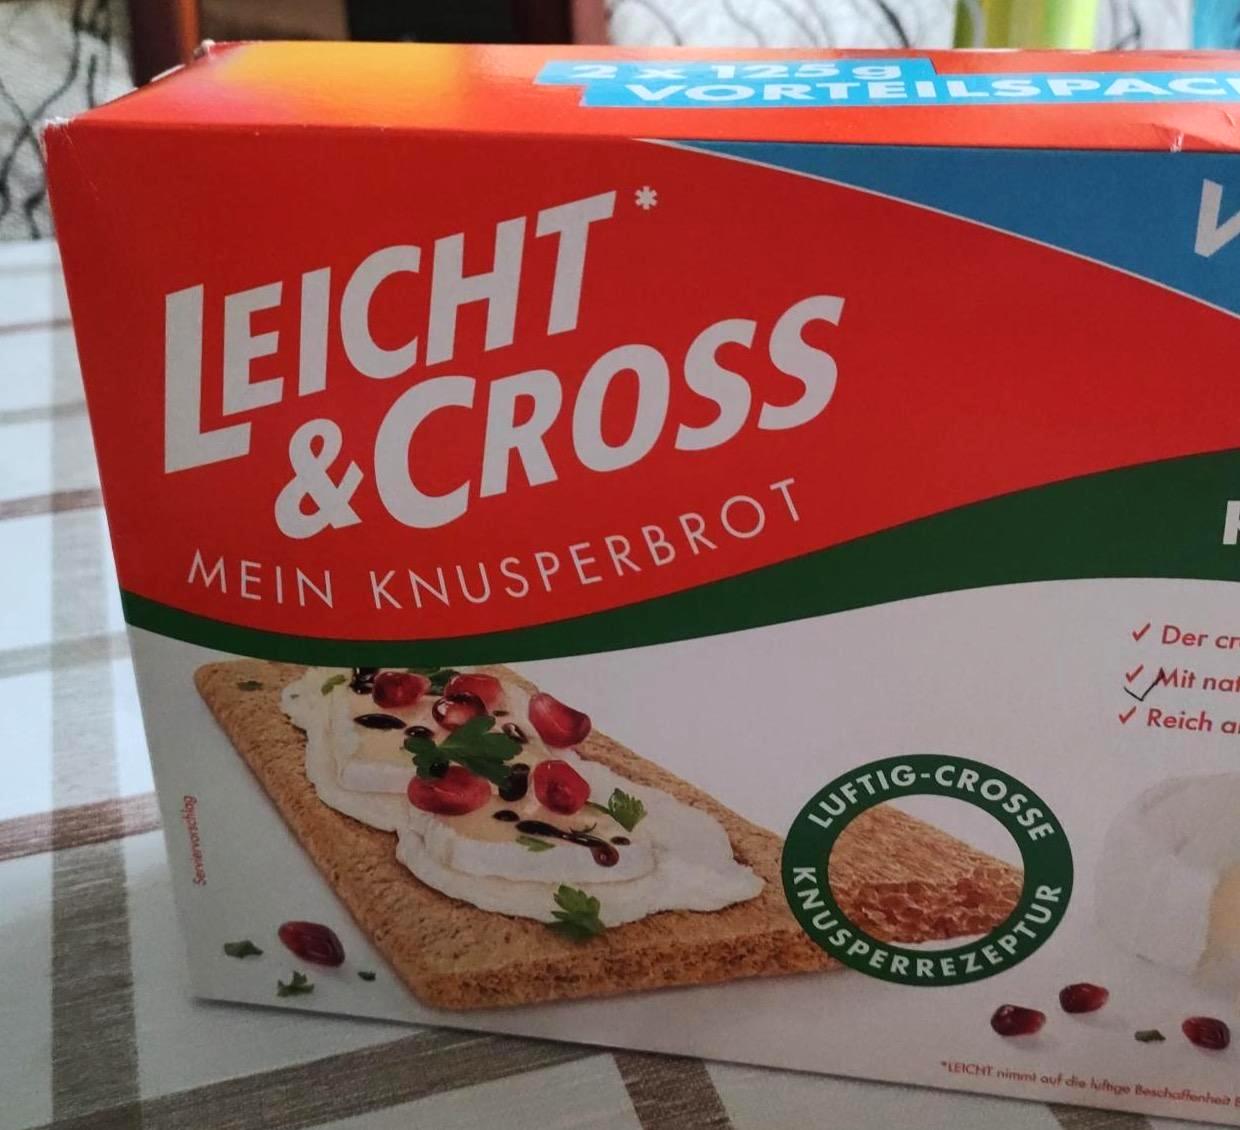 Képek - Mein knusperbrot Leicht & Cross